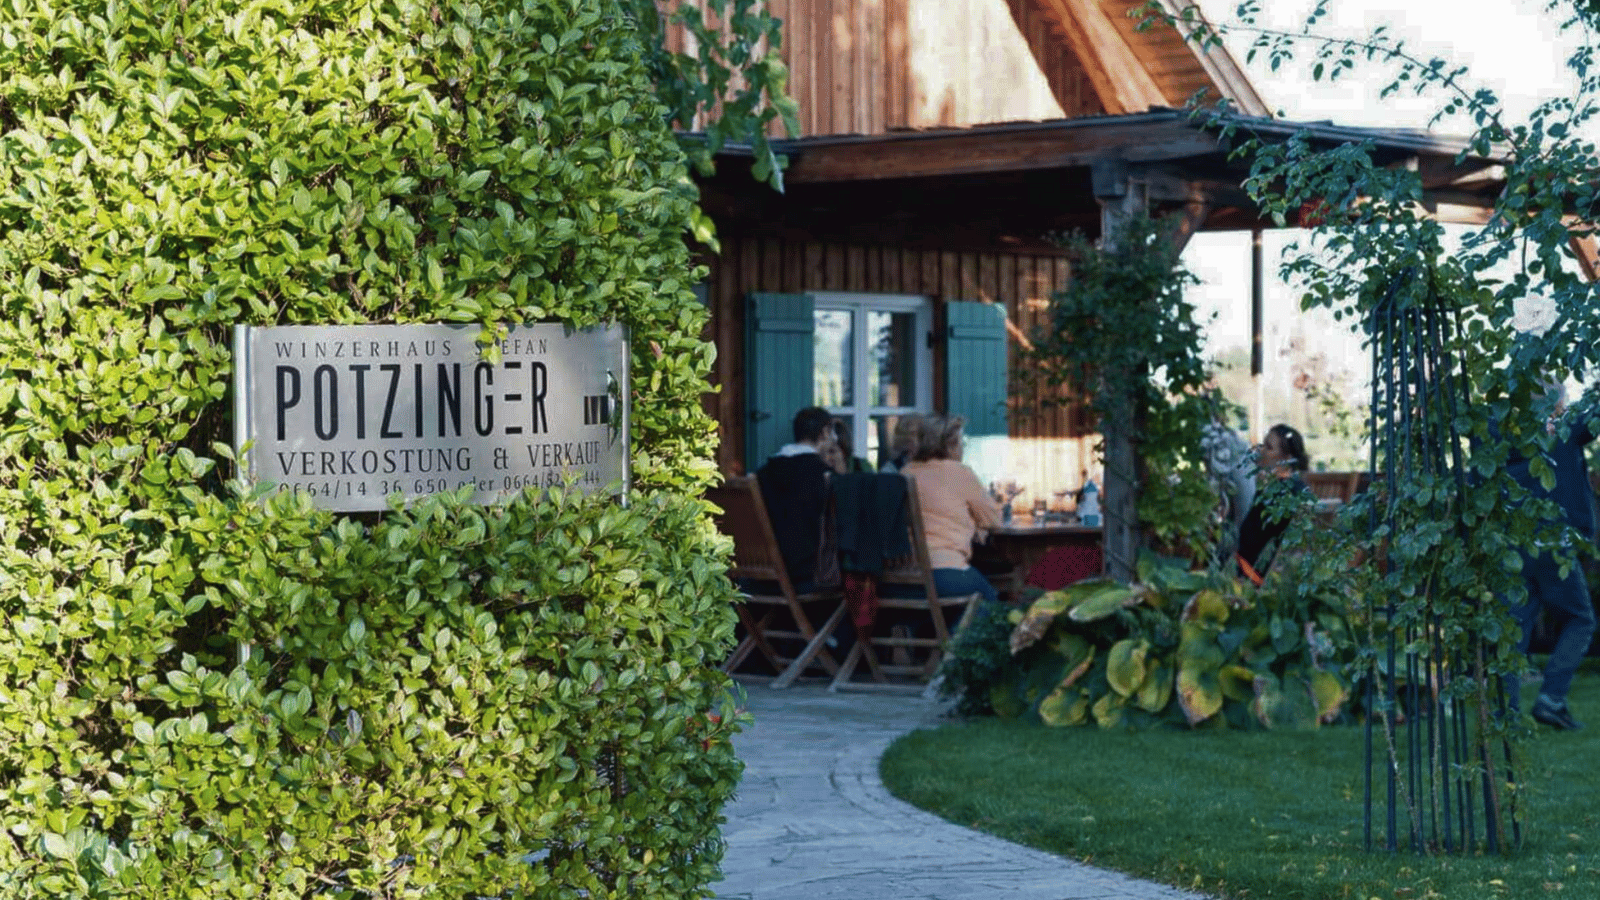 Potzinger: Güney Steiermark’ın ve Avusturya’nın benzersiz şaraplarından…